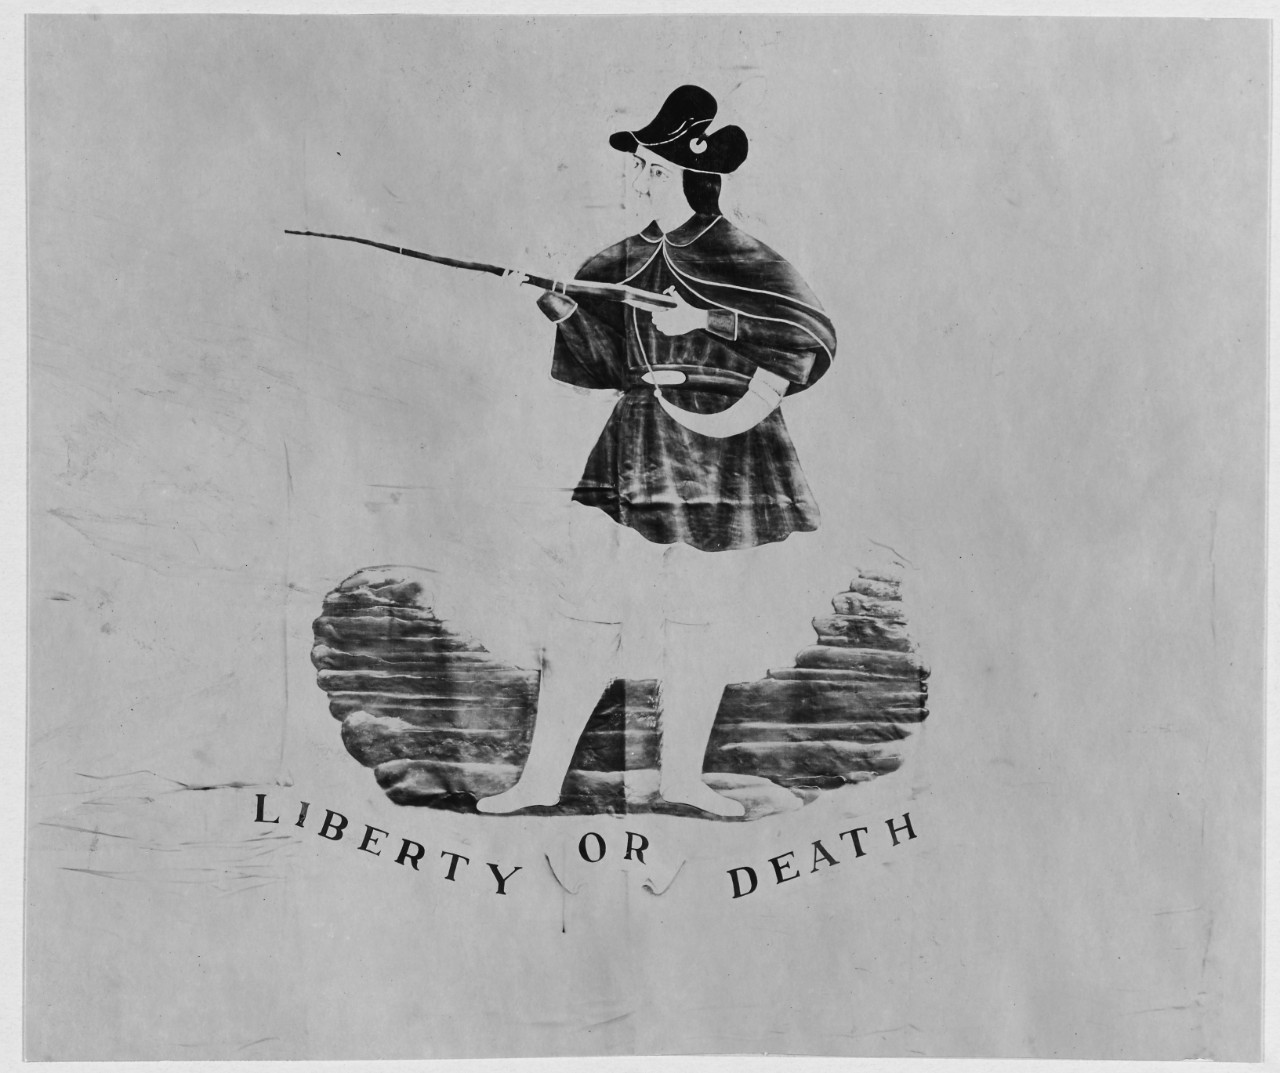 South Carolina's "Liberty or death" flag